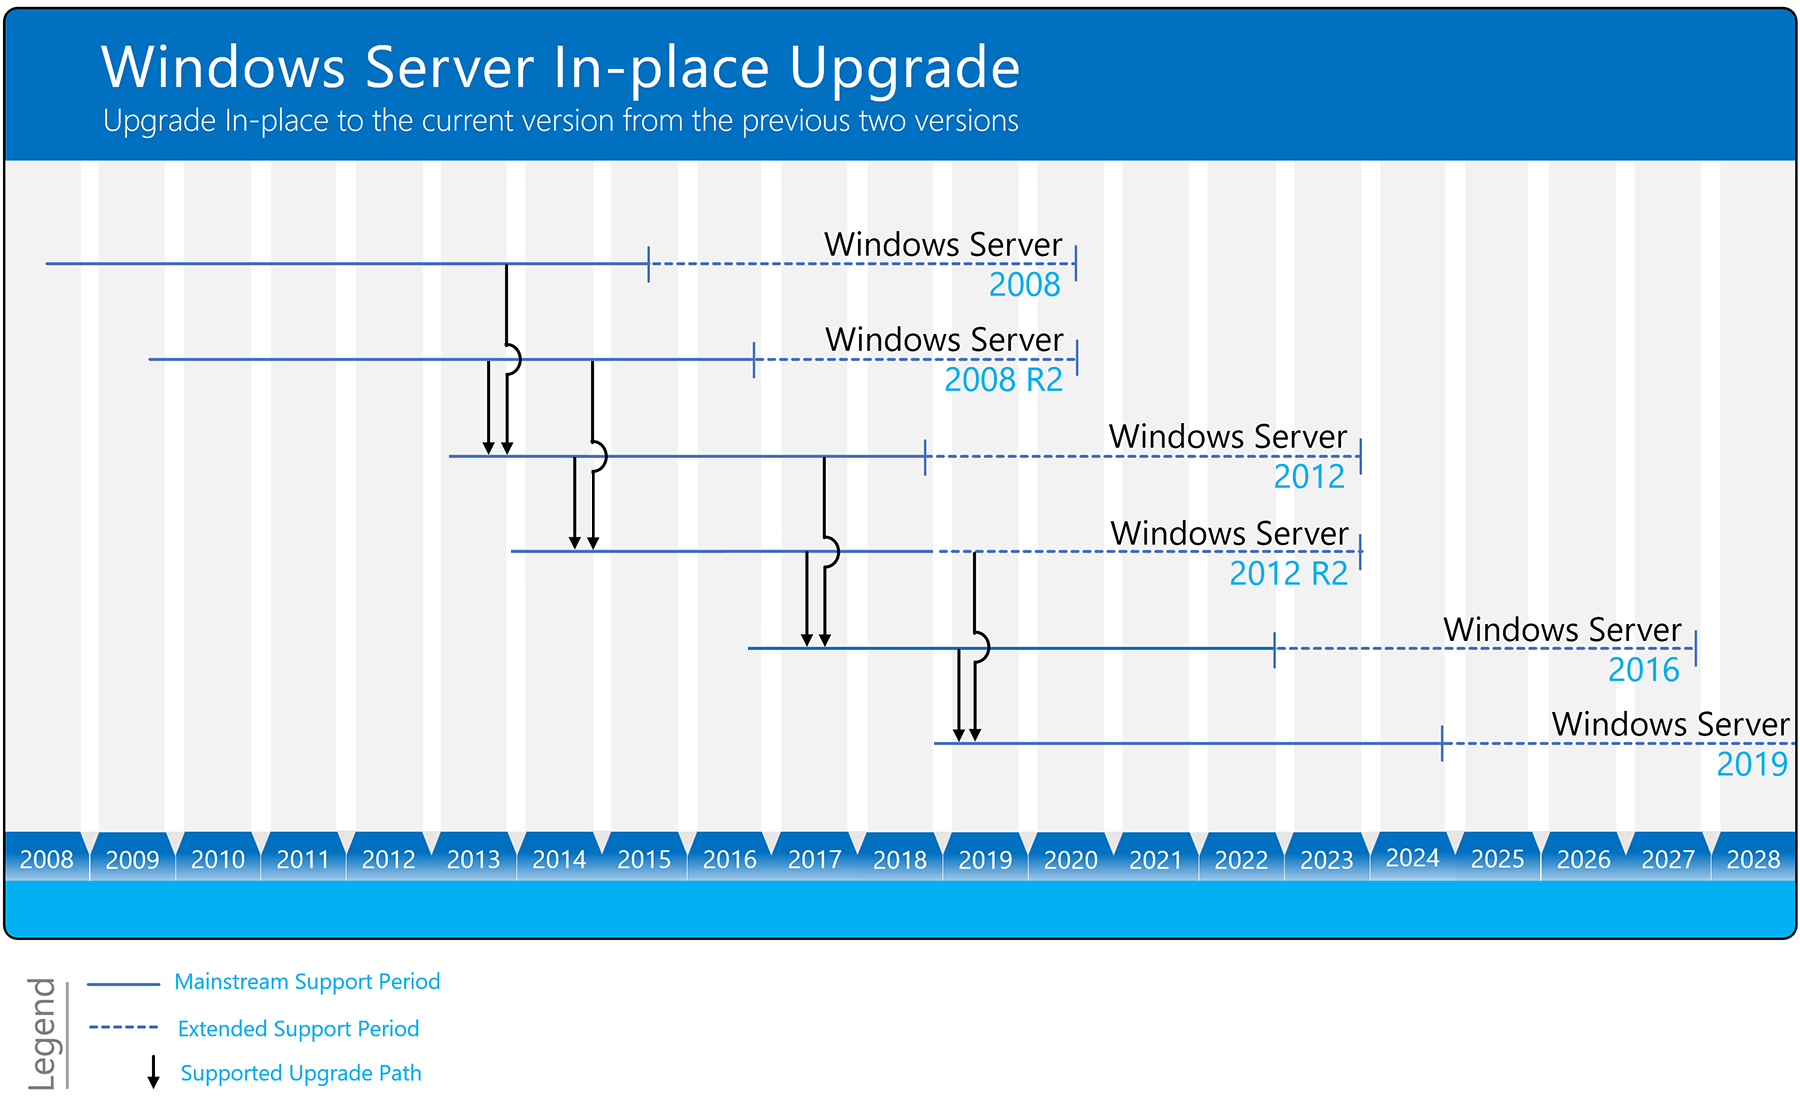 更好的阐述什么是Windows Server 升级